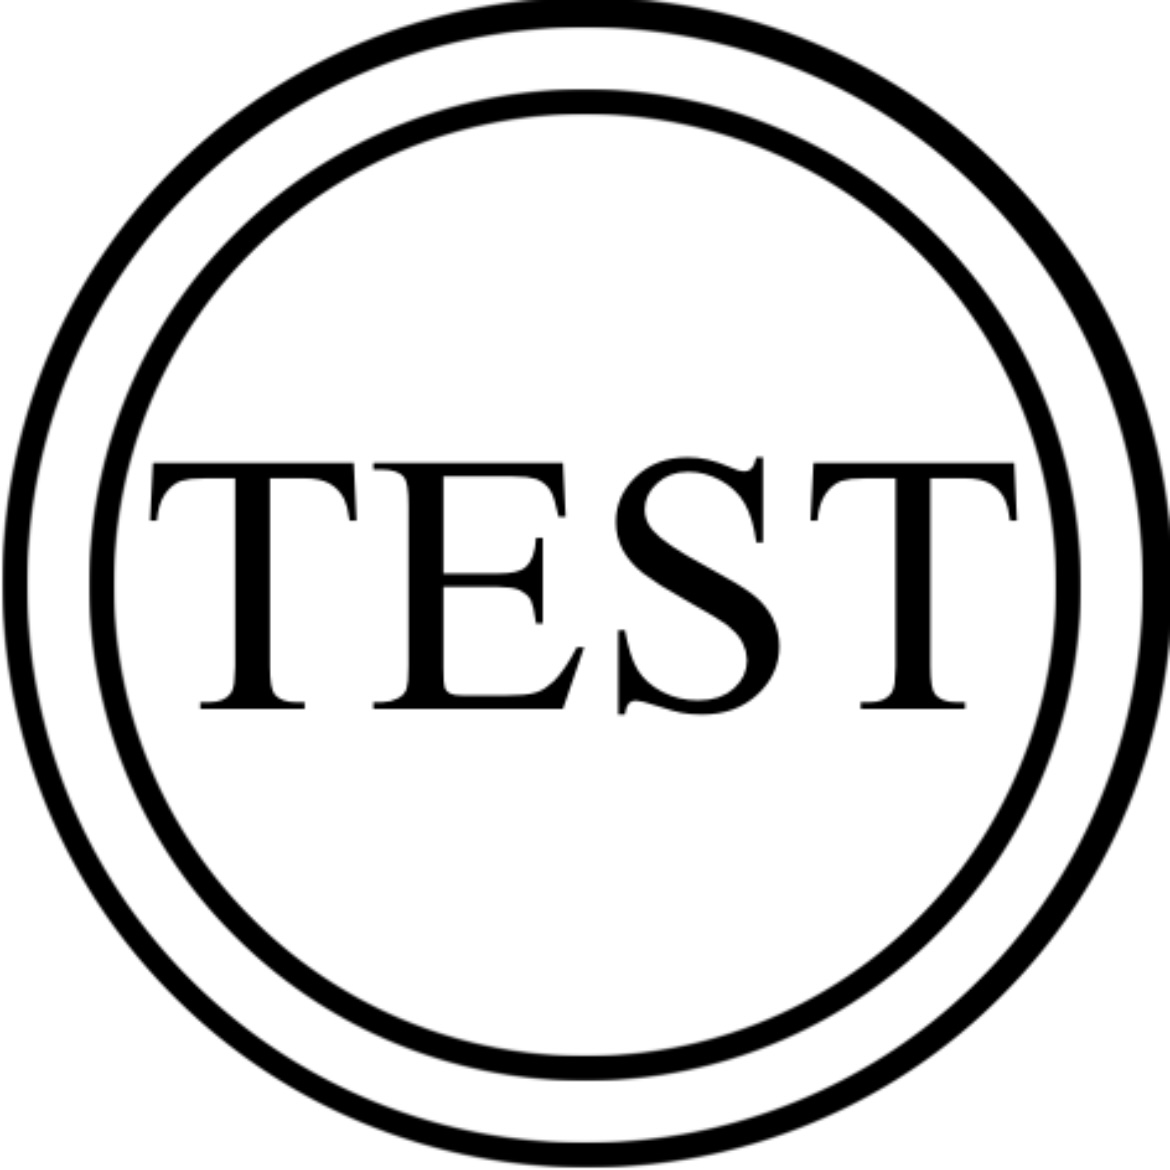 Тестовый. Тестирование надпись. Тест надпись. Тест логотип. Test слово.